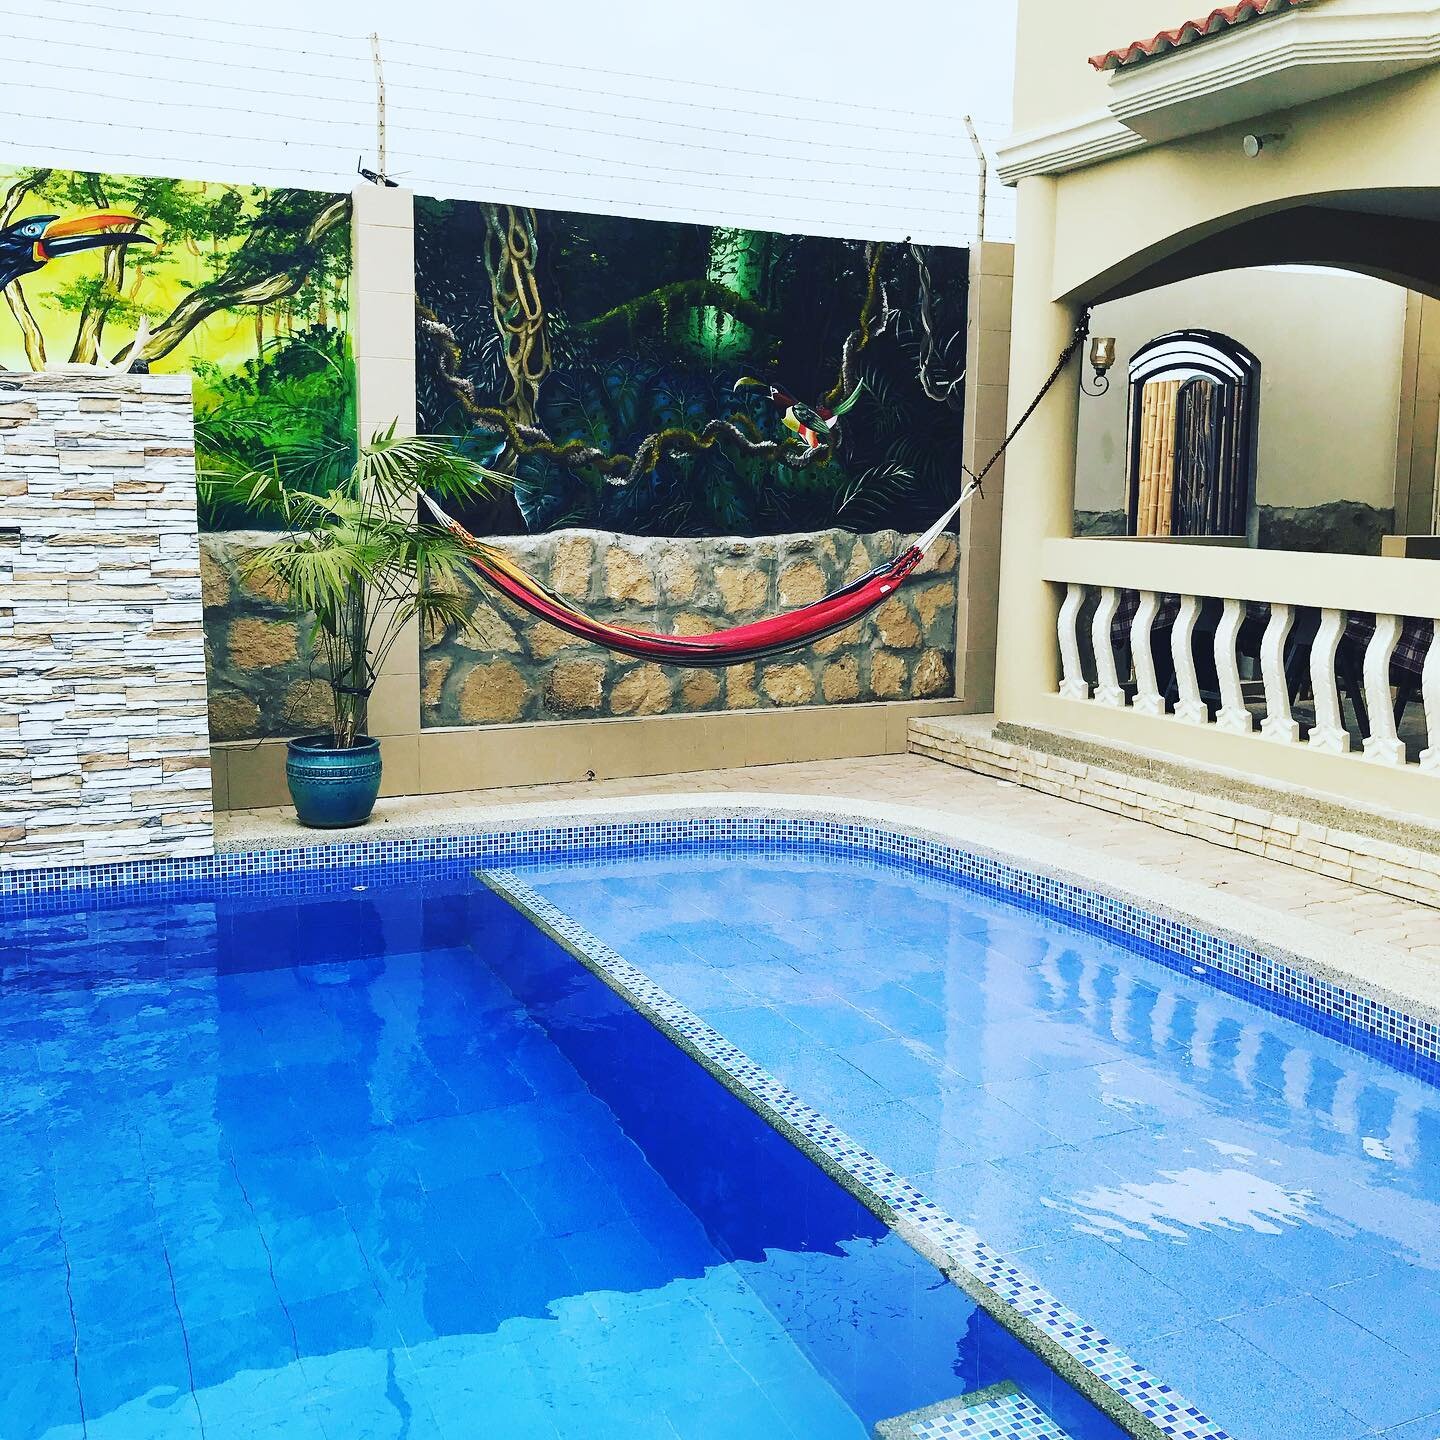 Good Friday morning! We are ready for a full house this weekend! TGIF!! @posada.estrella @ynnoottnnooww #bnb #ecuador #beachlife #hotel www.posadaestrella.com